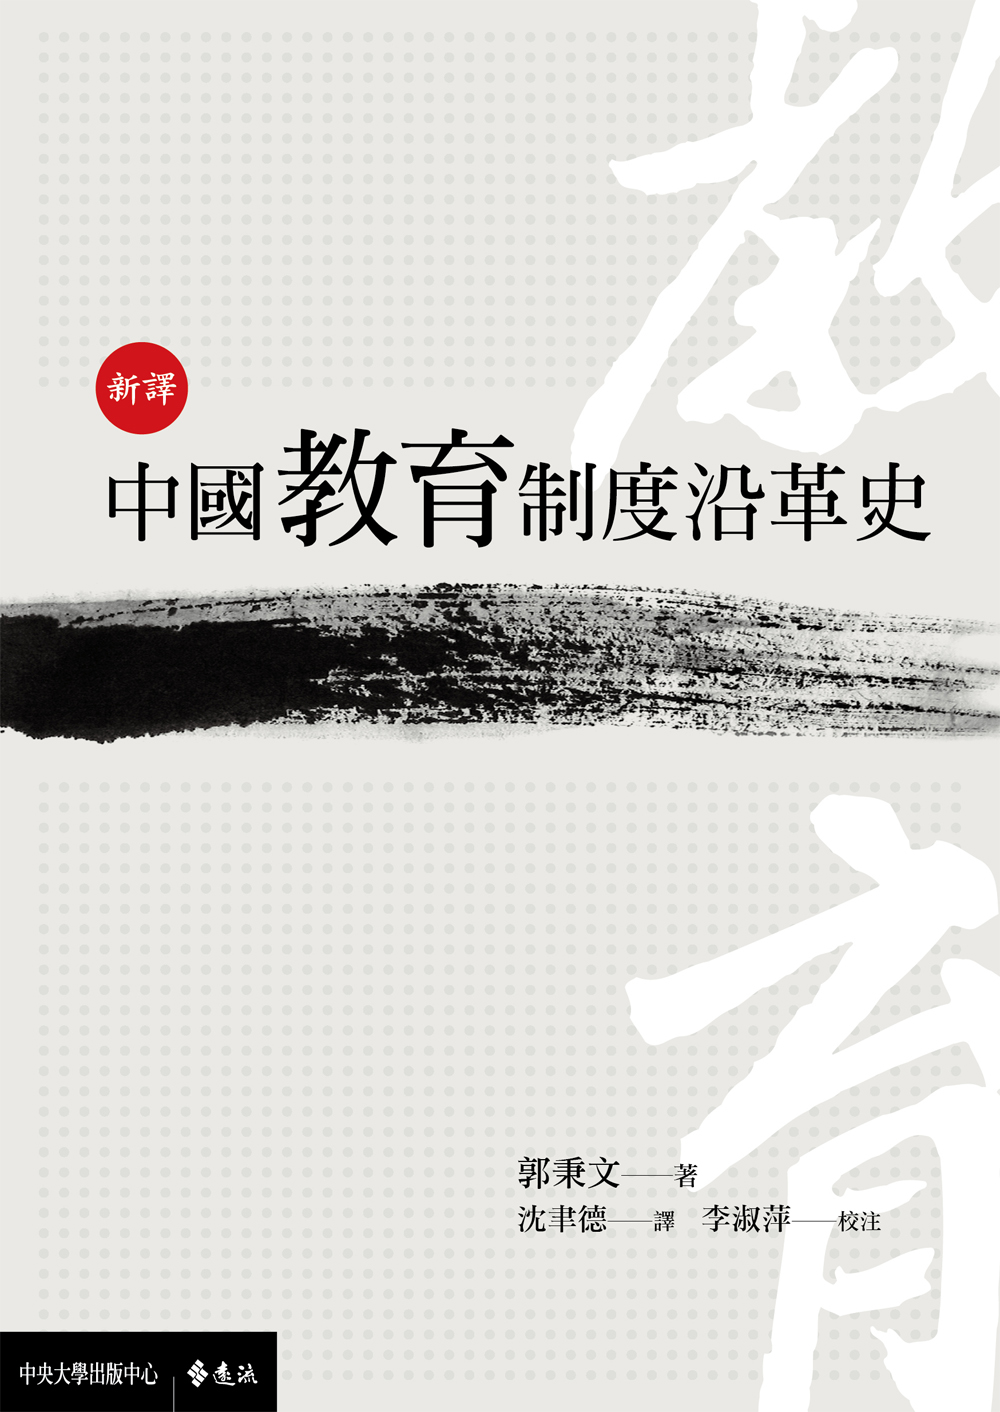 新譯中國教育制度沿革史